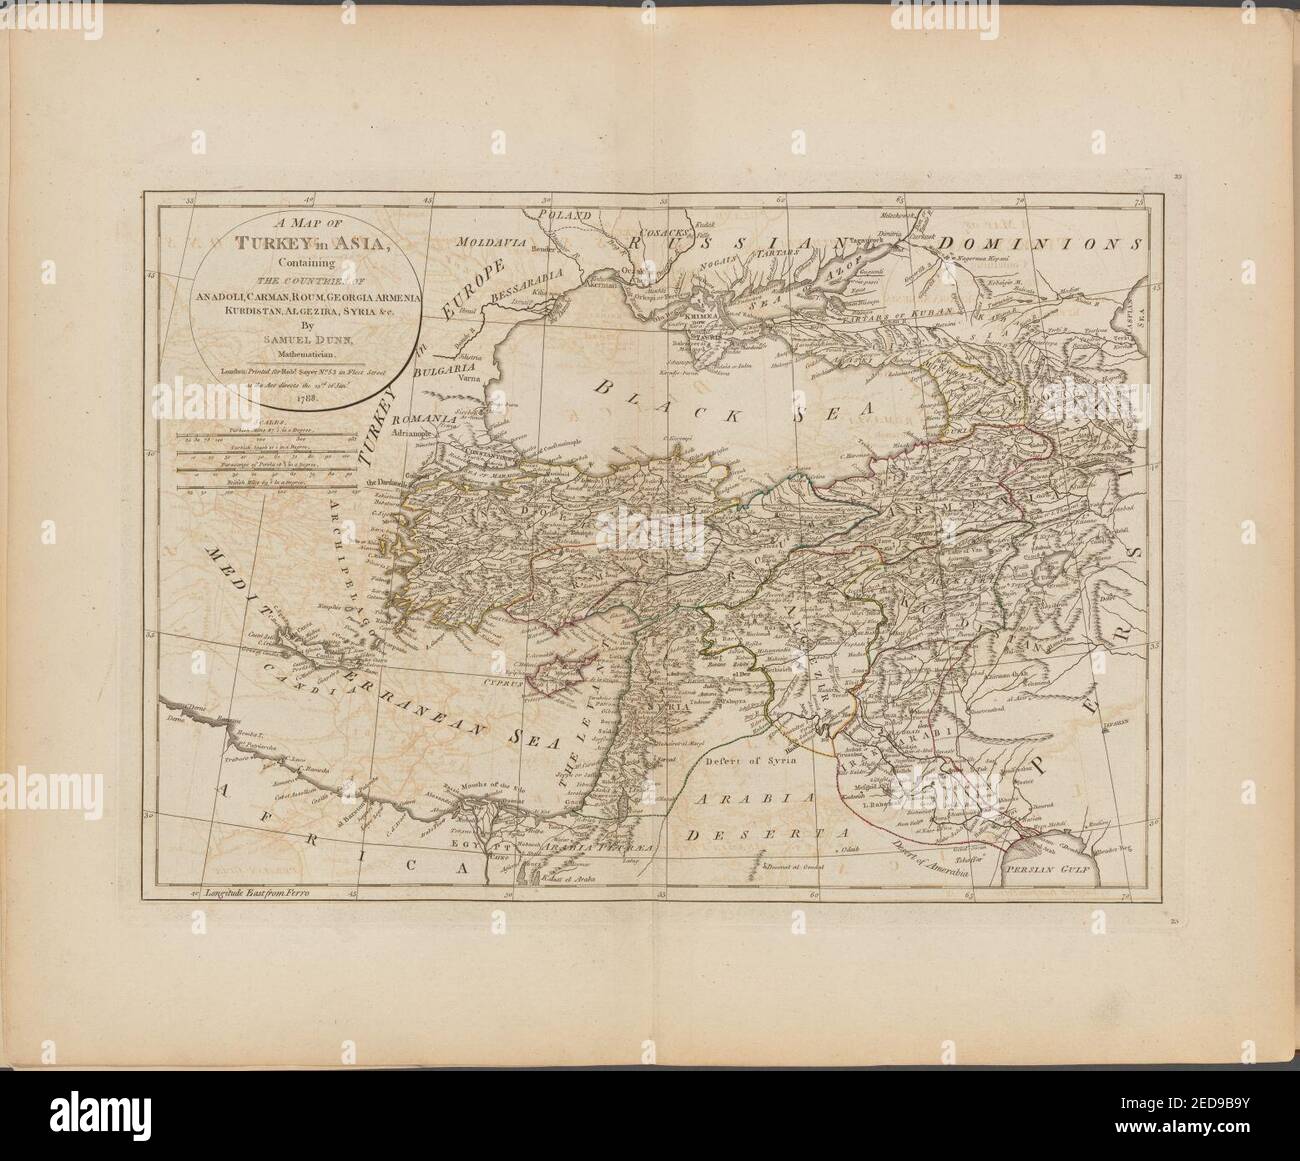 A map of Turkey in Asia, containing the countries of Anadoli, Carman, Roum, Georgia Armenia, Kurdistan, Algezira, Syria, &c Stock Photo